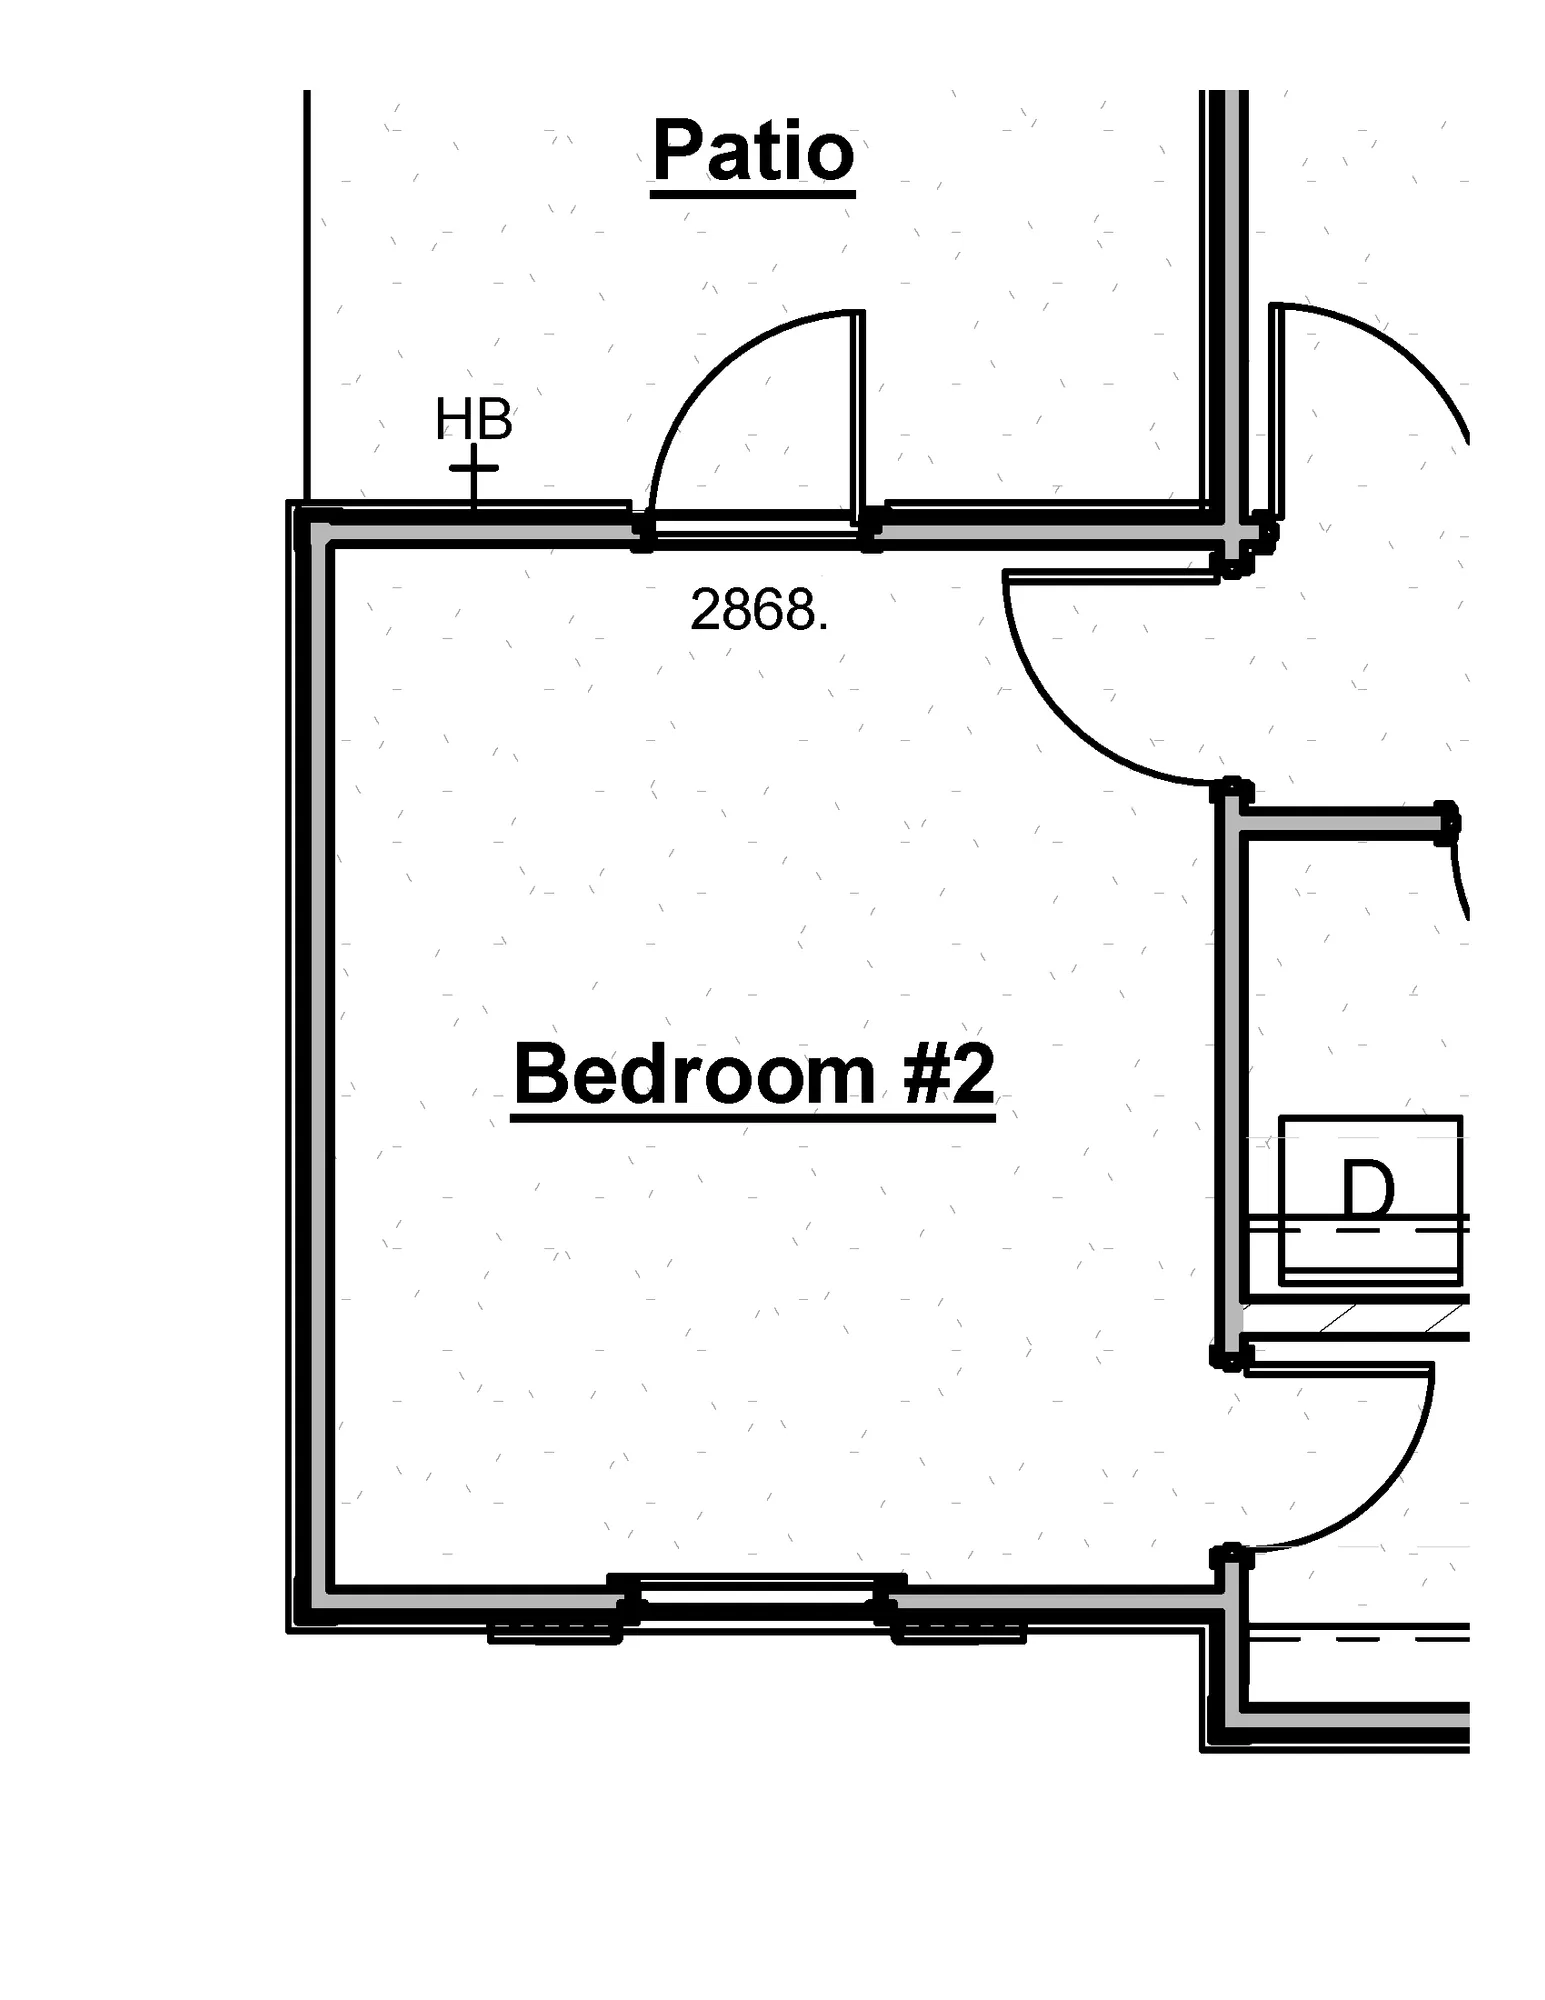 Bedroom 2 Patio Door - undefined